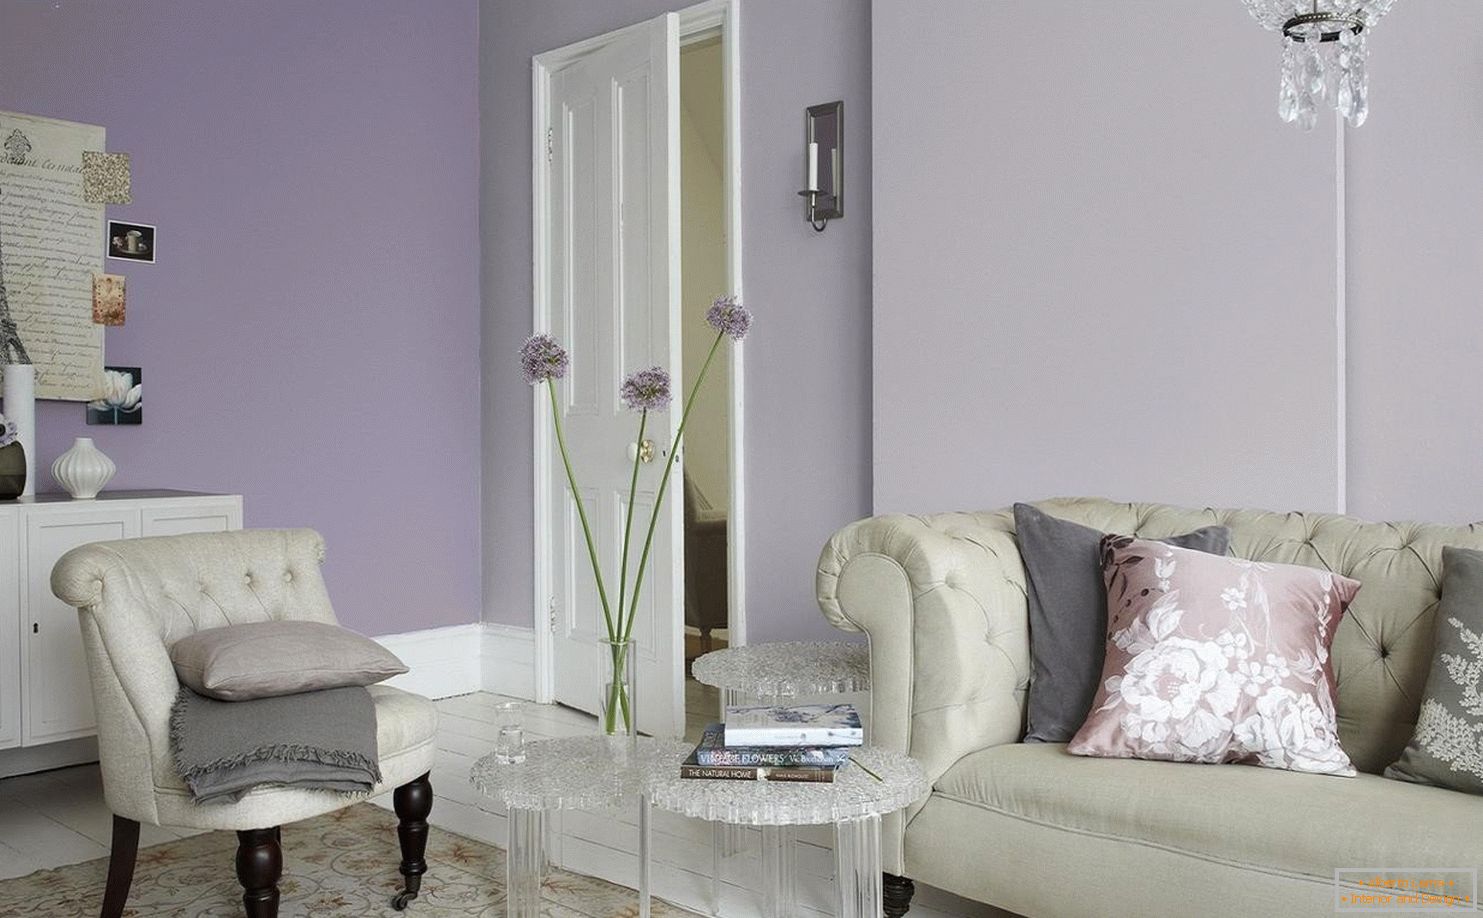 Lilac color in the interior